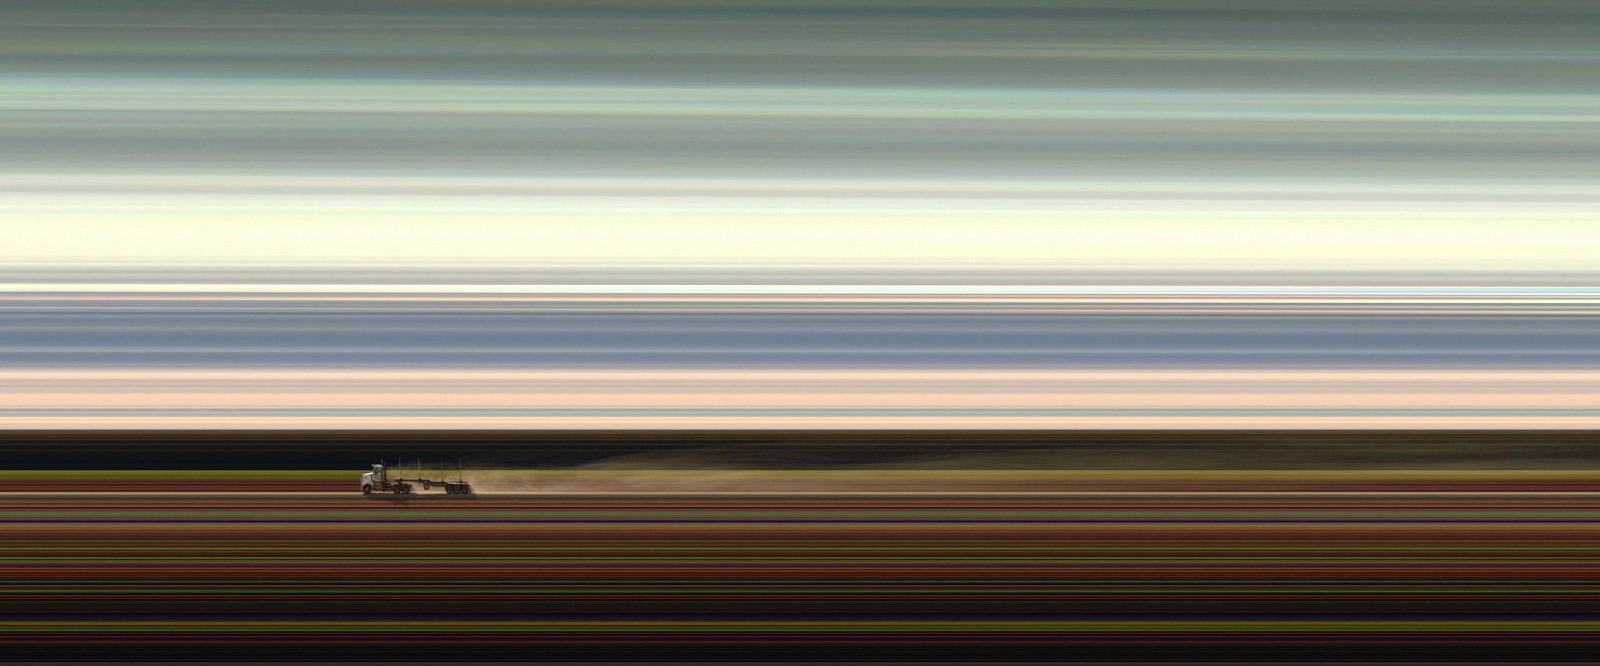 Jay Mark Johnson, TUMUT TUMULT #3, 2012 Australia
archival pigment on paper, mounted on aluminum, 40 x 96 in. (101.6 x 243.8 cm)